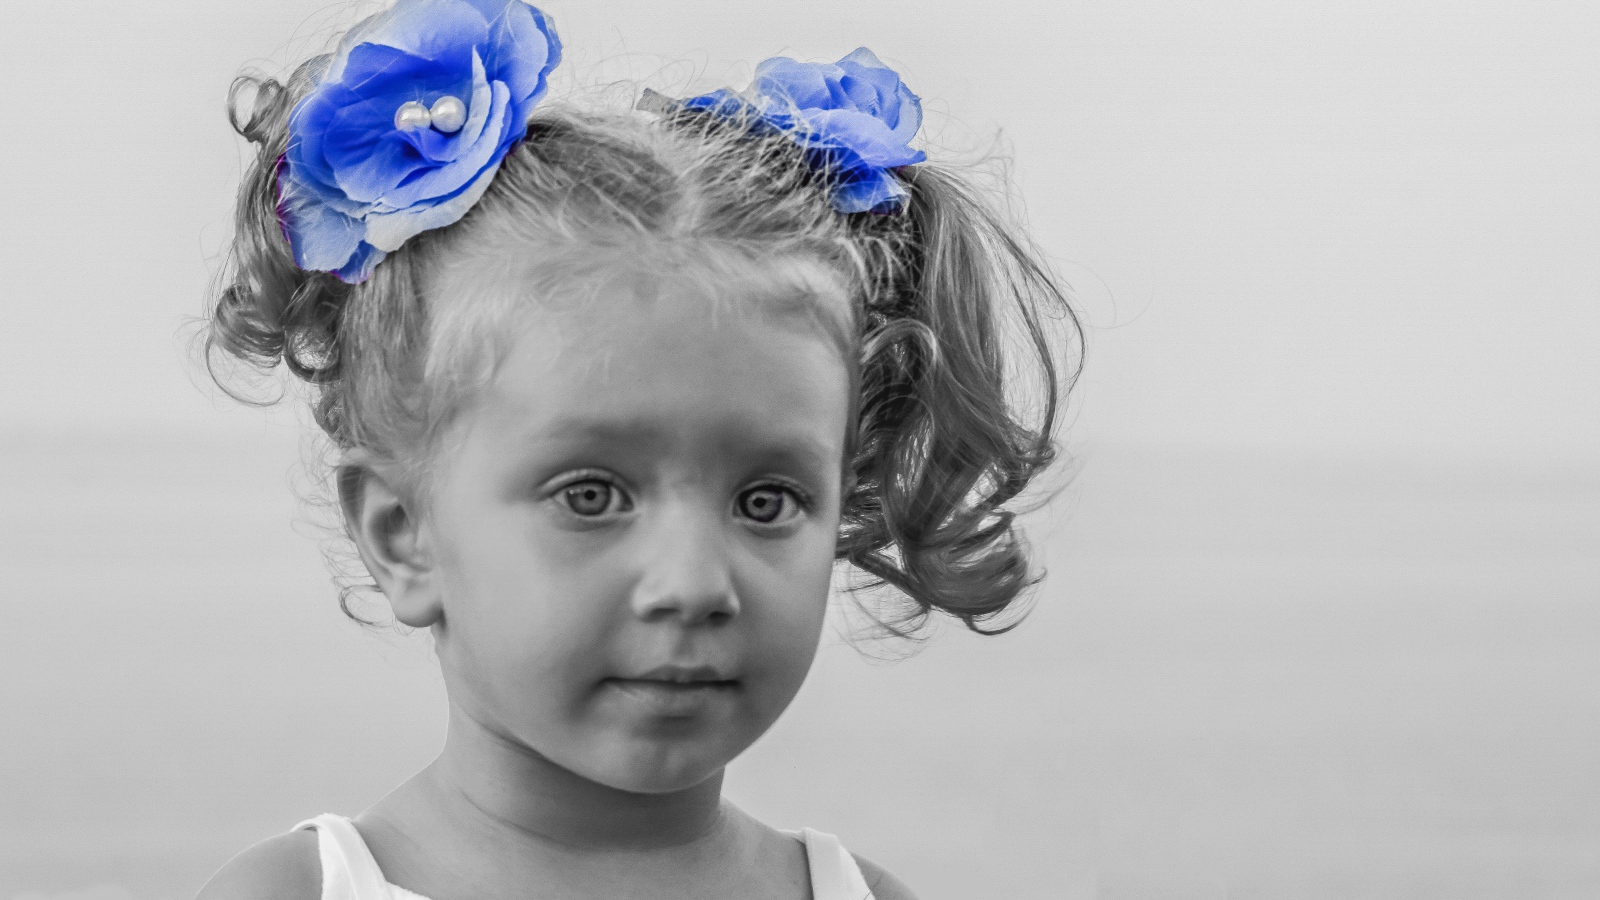 Маленькая девочка с голубыми бантиками в волосах 